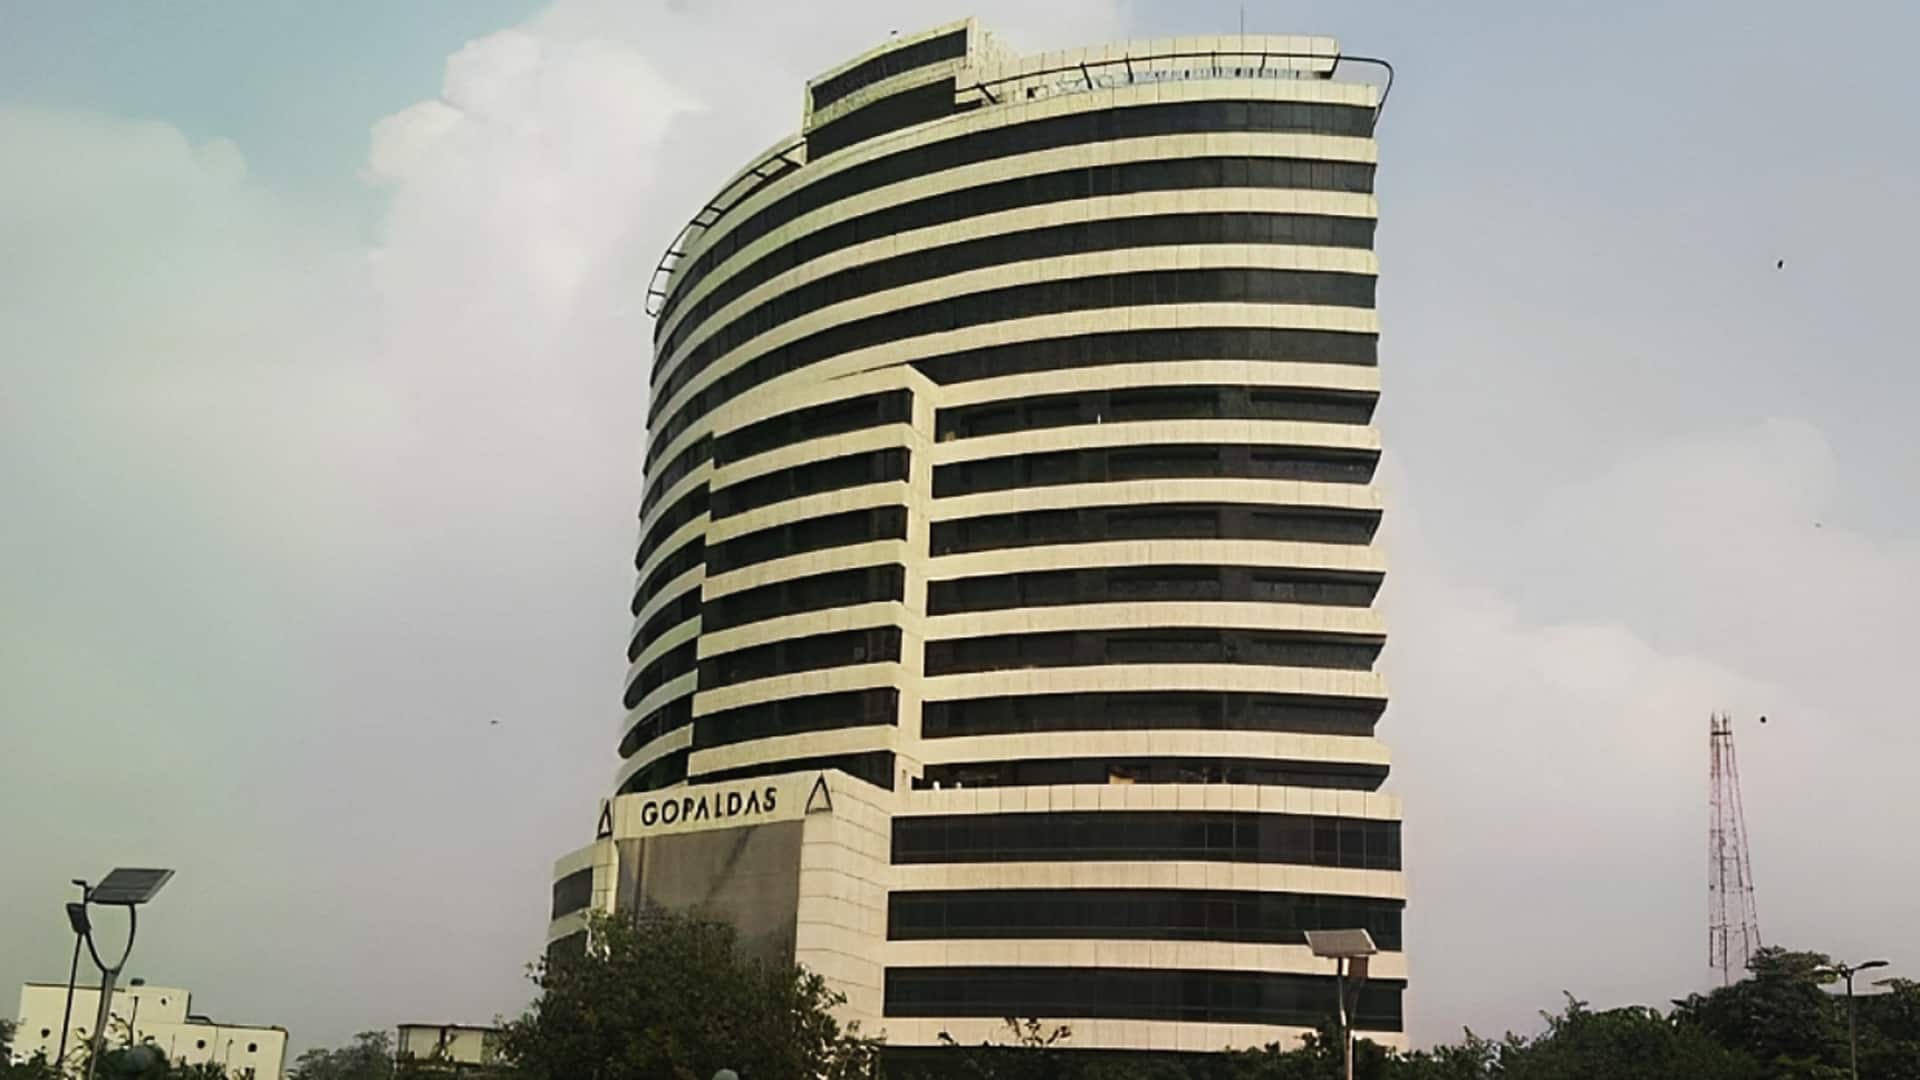 दिल्ली: कनॉट प्लेस में गोपालदास भवन की 11वीं मंजिल पर लगी आग